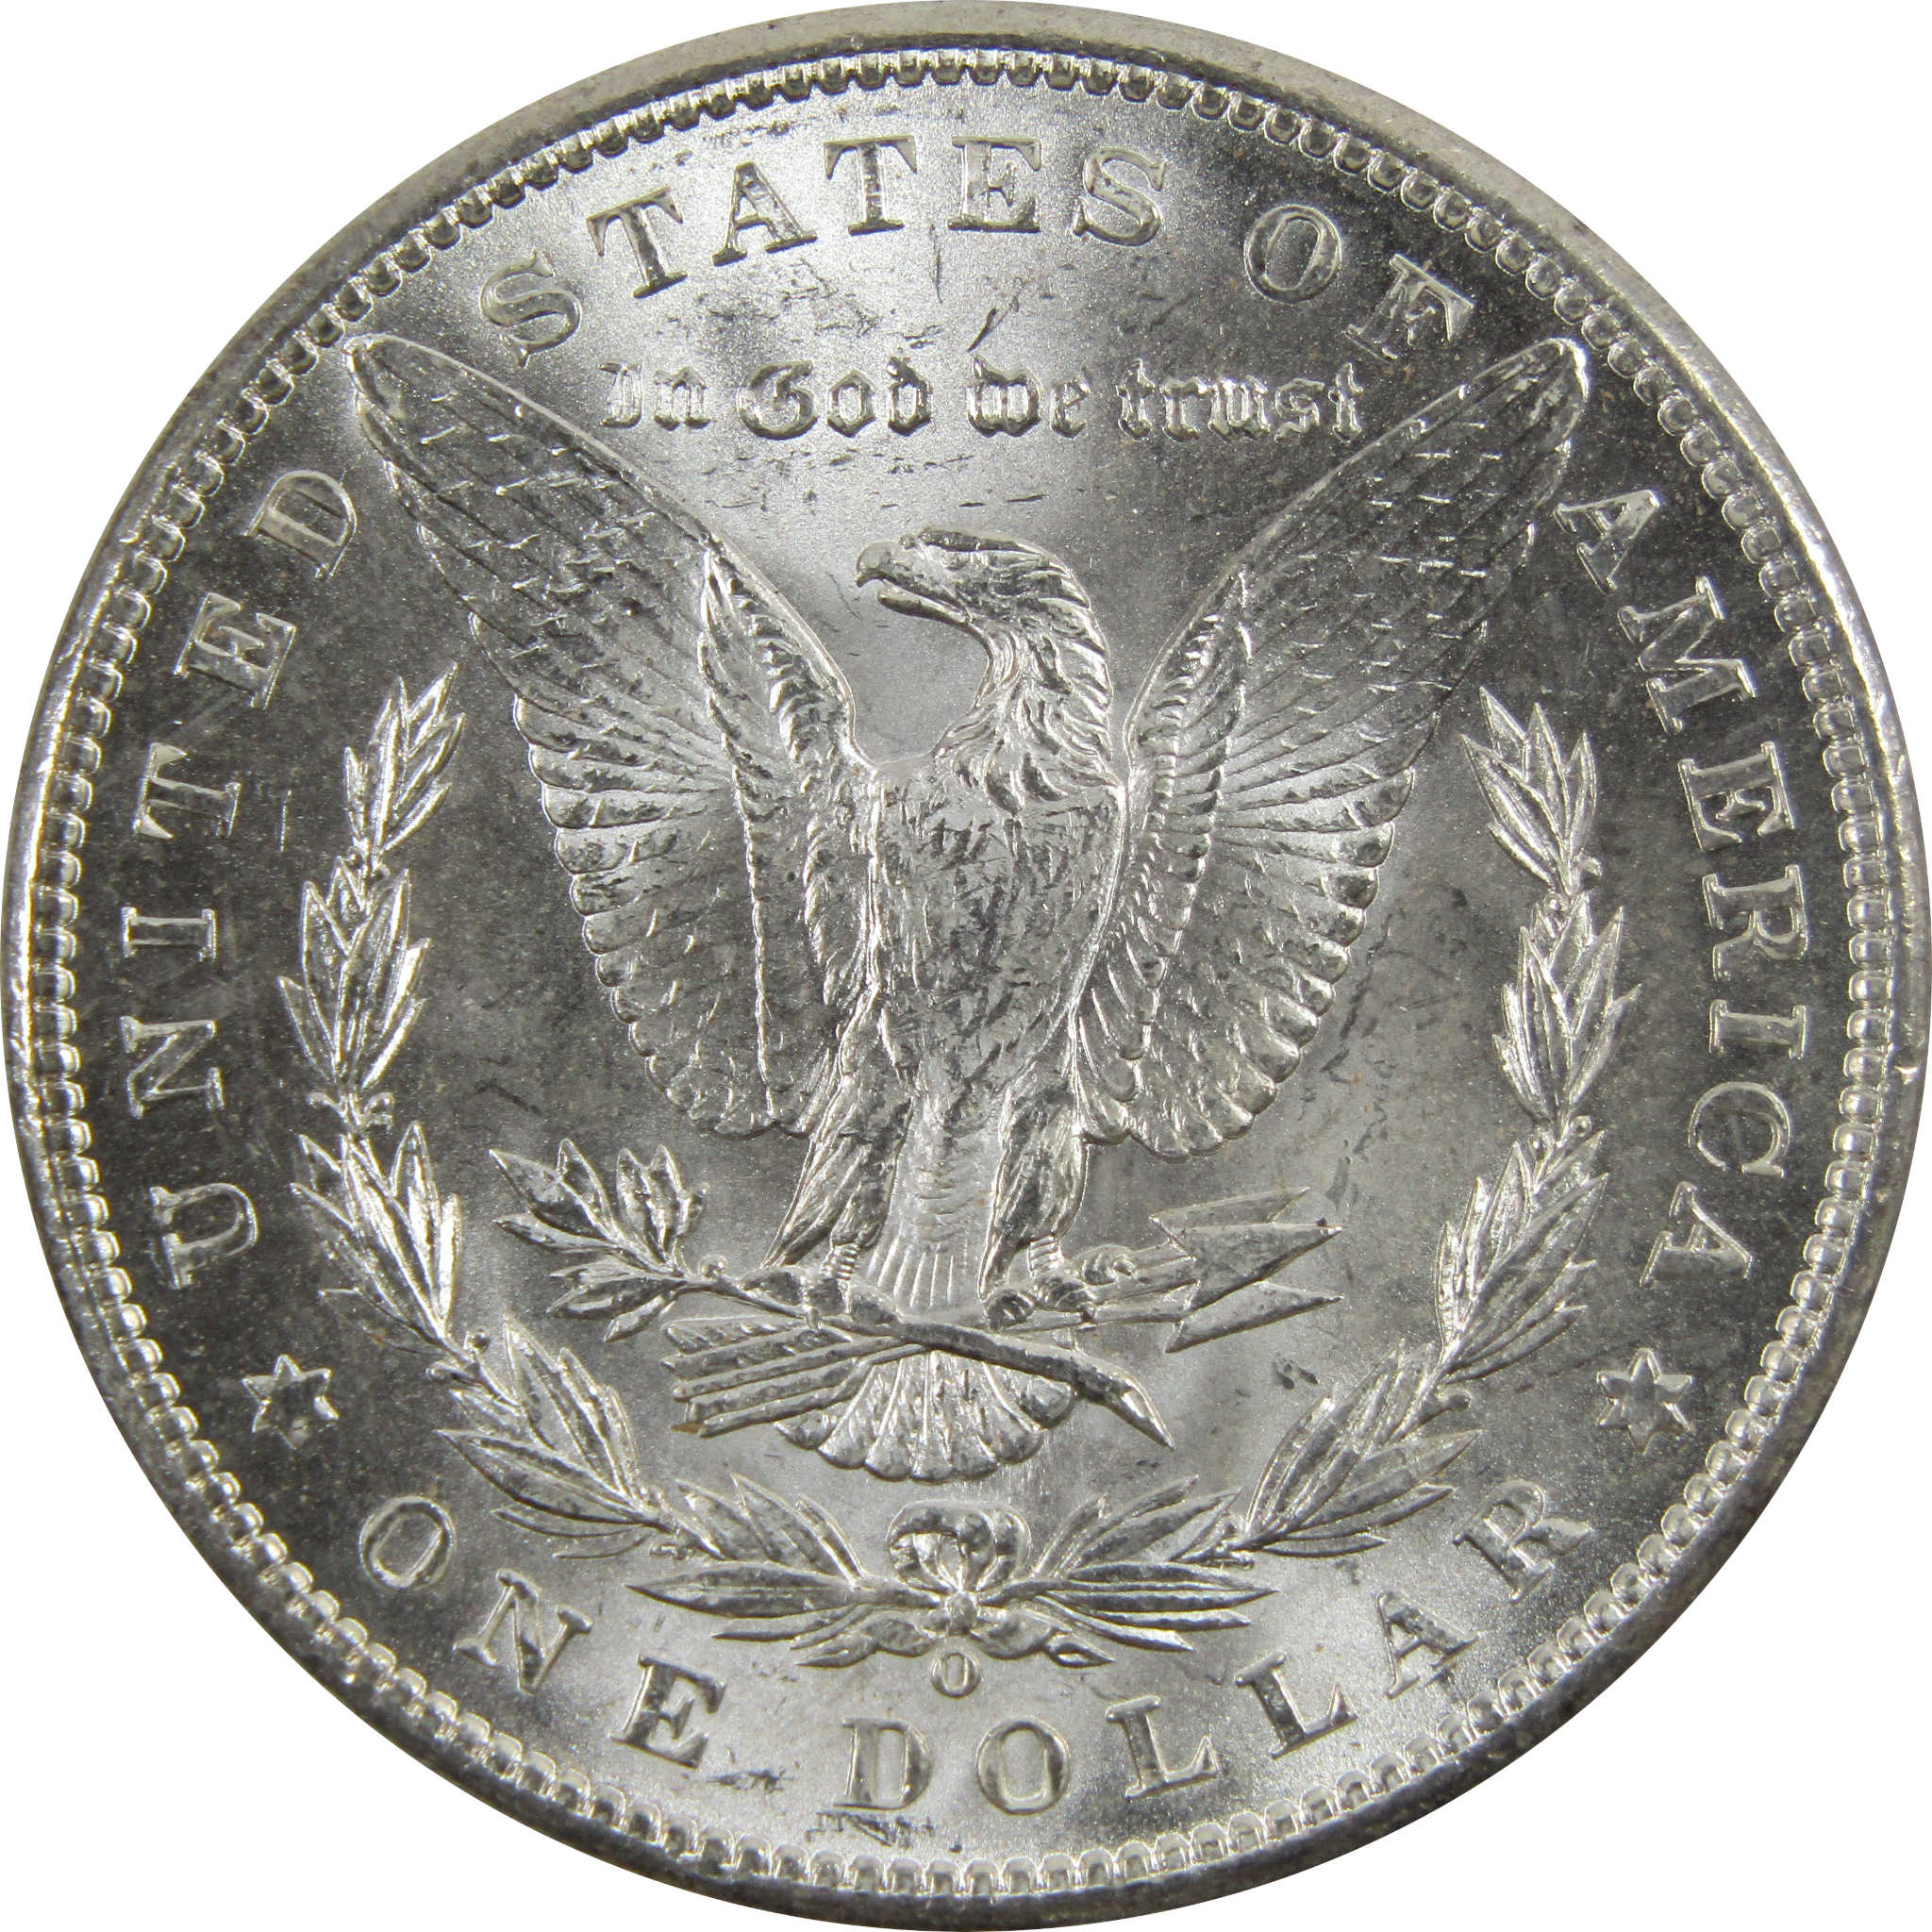 1898 O Morgan Dollar BU Uncirculated 90% Silver $1 Coin SKU:I5272 - Morgan coin - Morgan silver dollar - Morgan silver dollar for sale - Profile Coins &amp; Collectibles